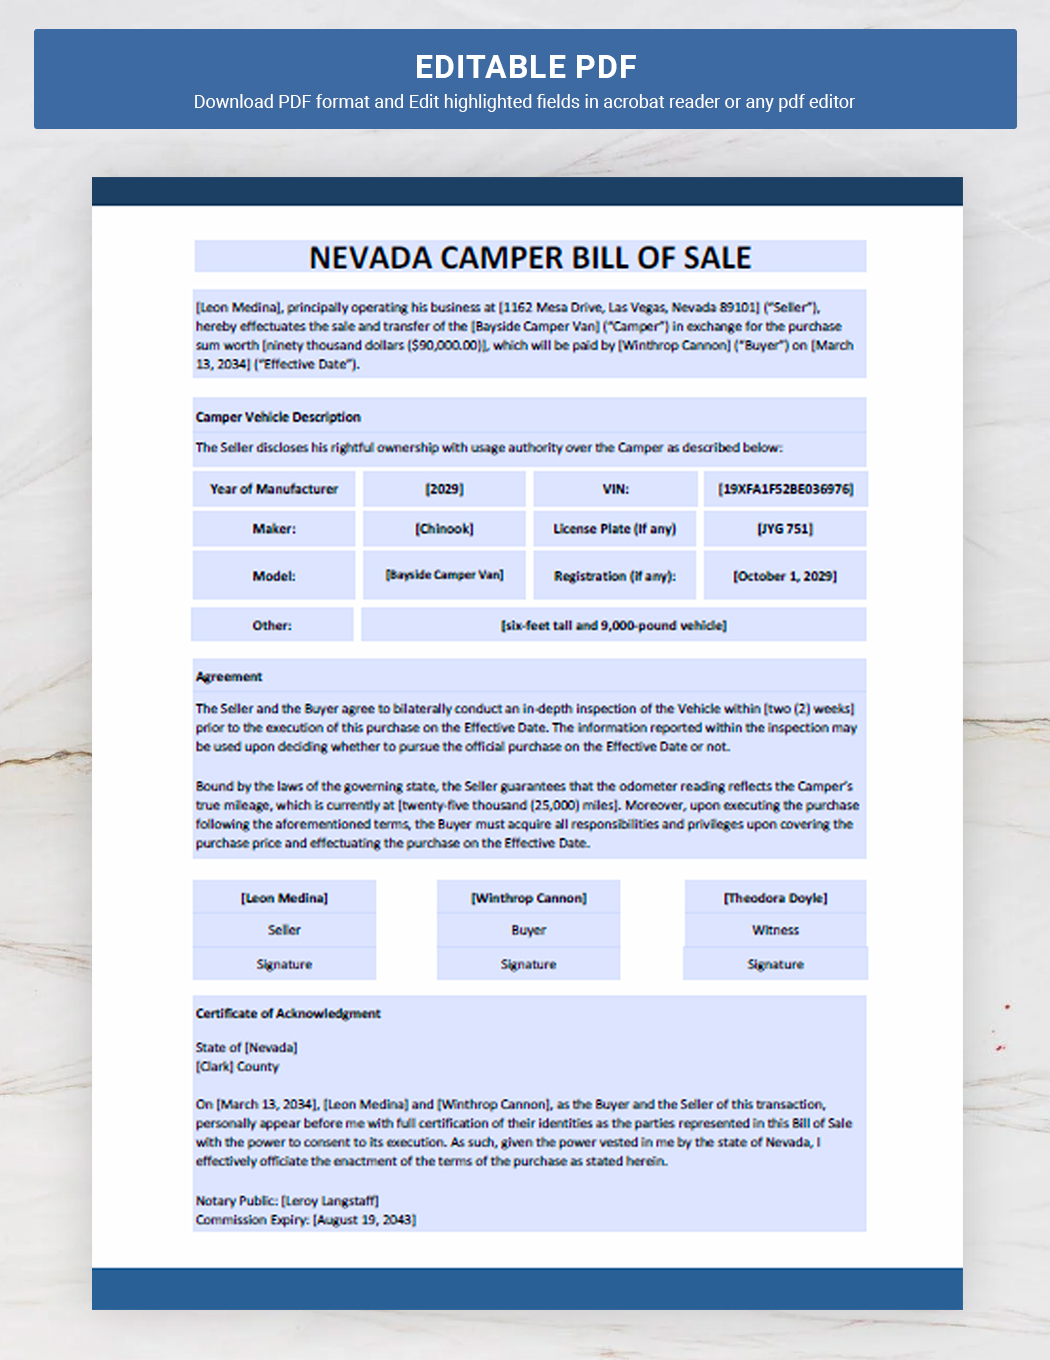 Nevada Camper Bill of Sale Template